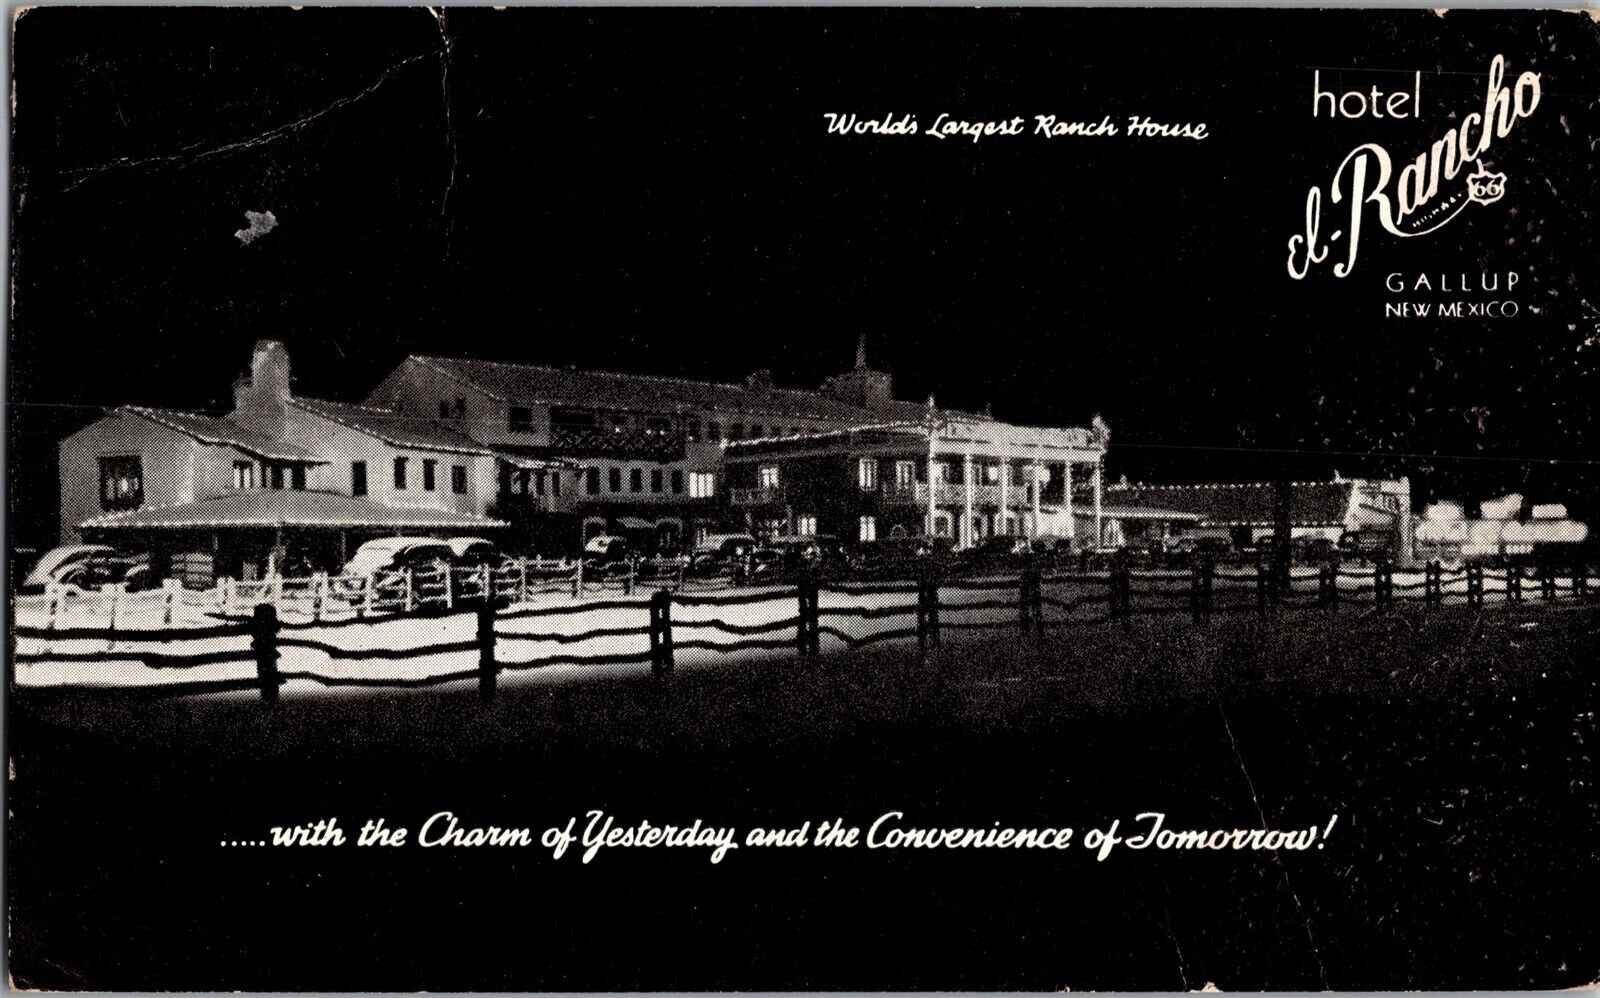 Hotel El Rancho, Gallup NM Ranch House Vintage Postcard L76